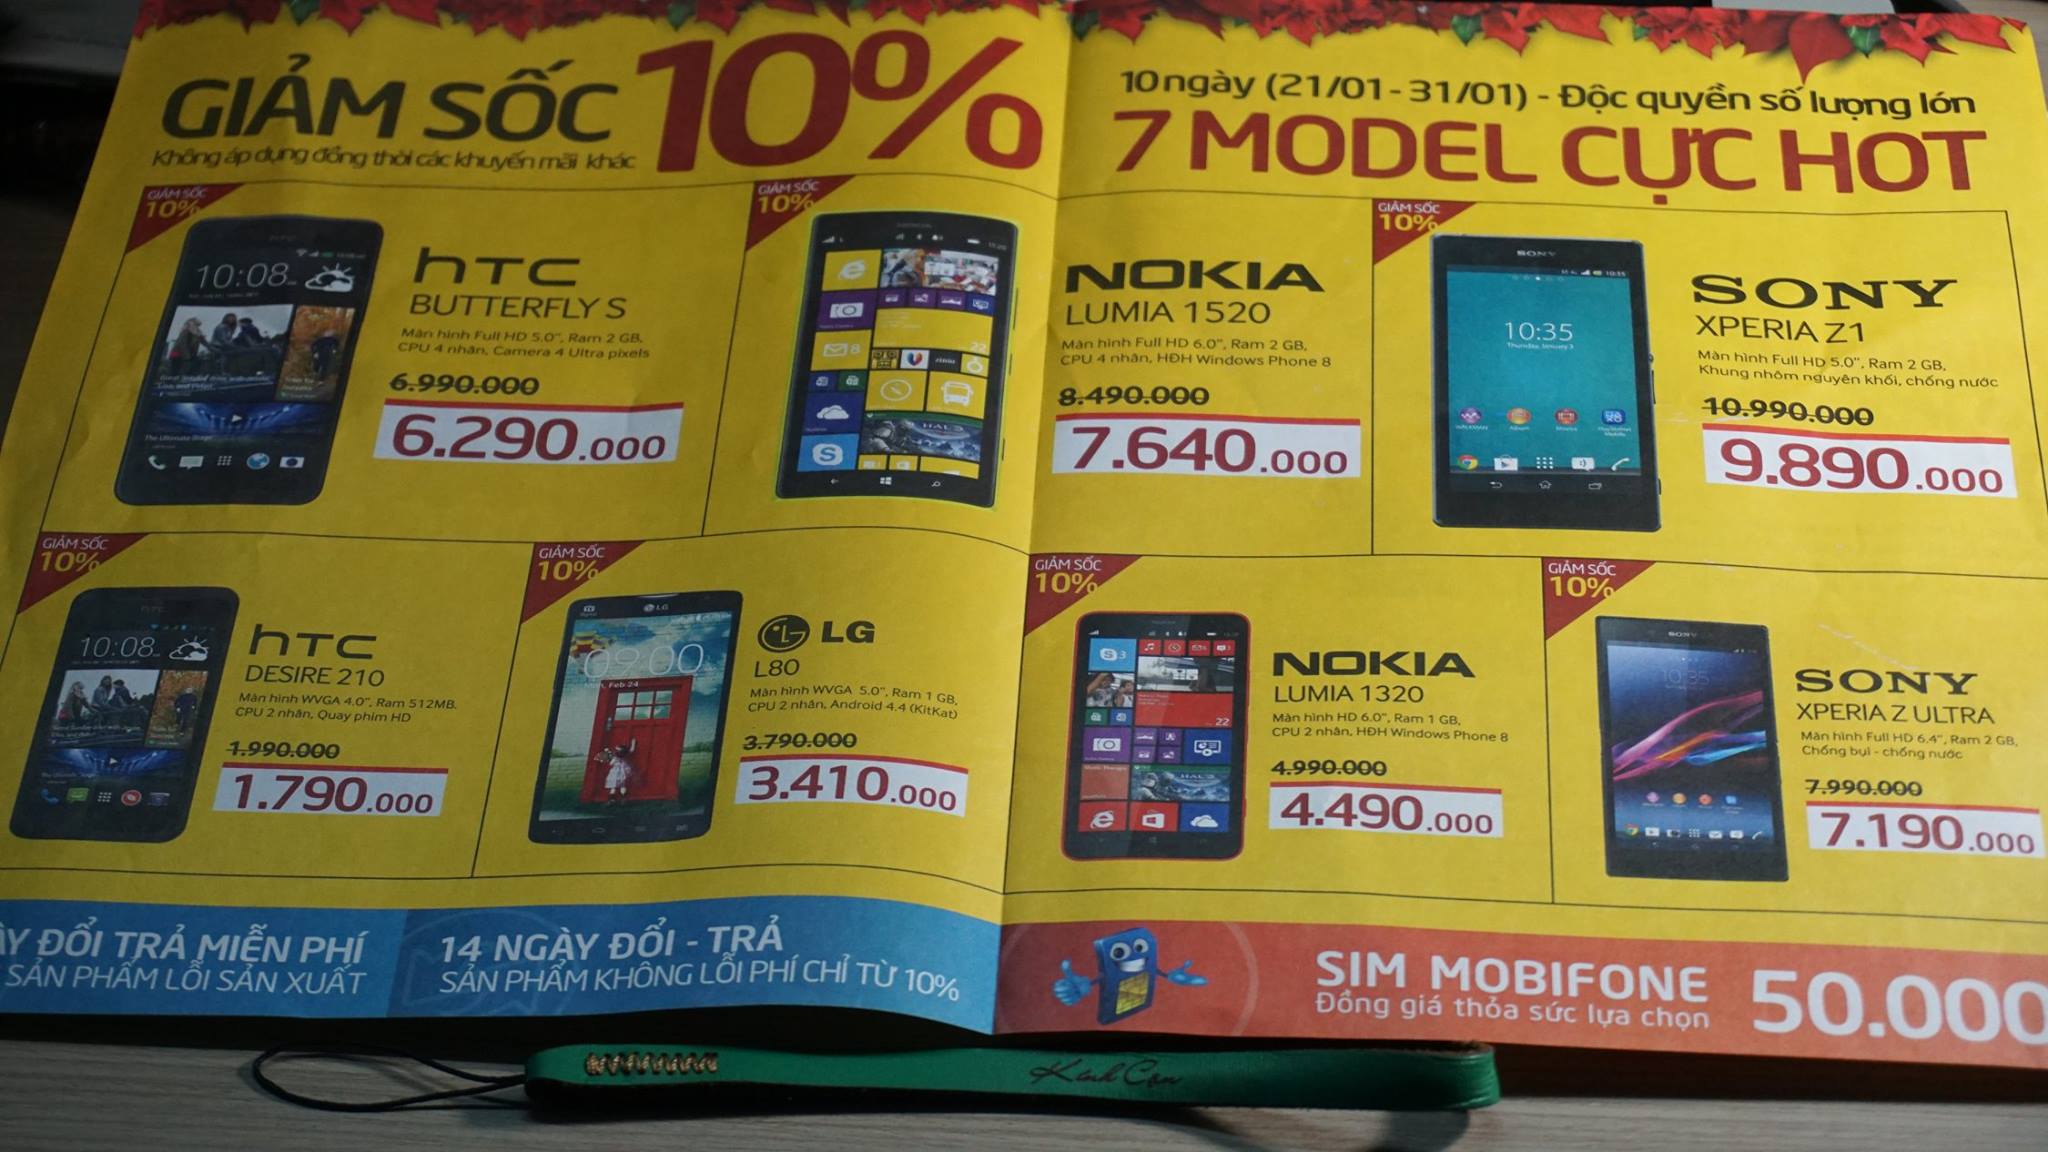 Bảng giá smartphone các hãng một thời, khi mà còn Nokia Lumia - HTC - LG...